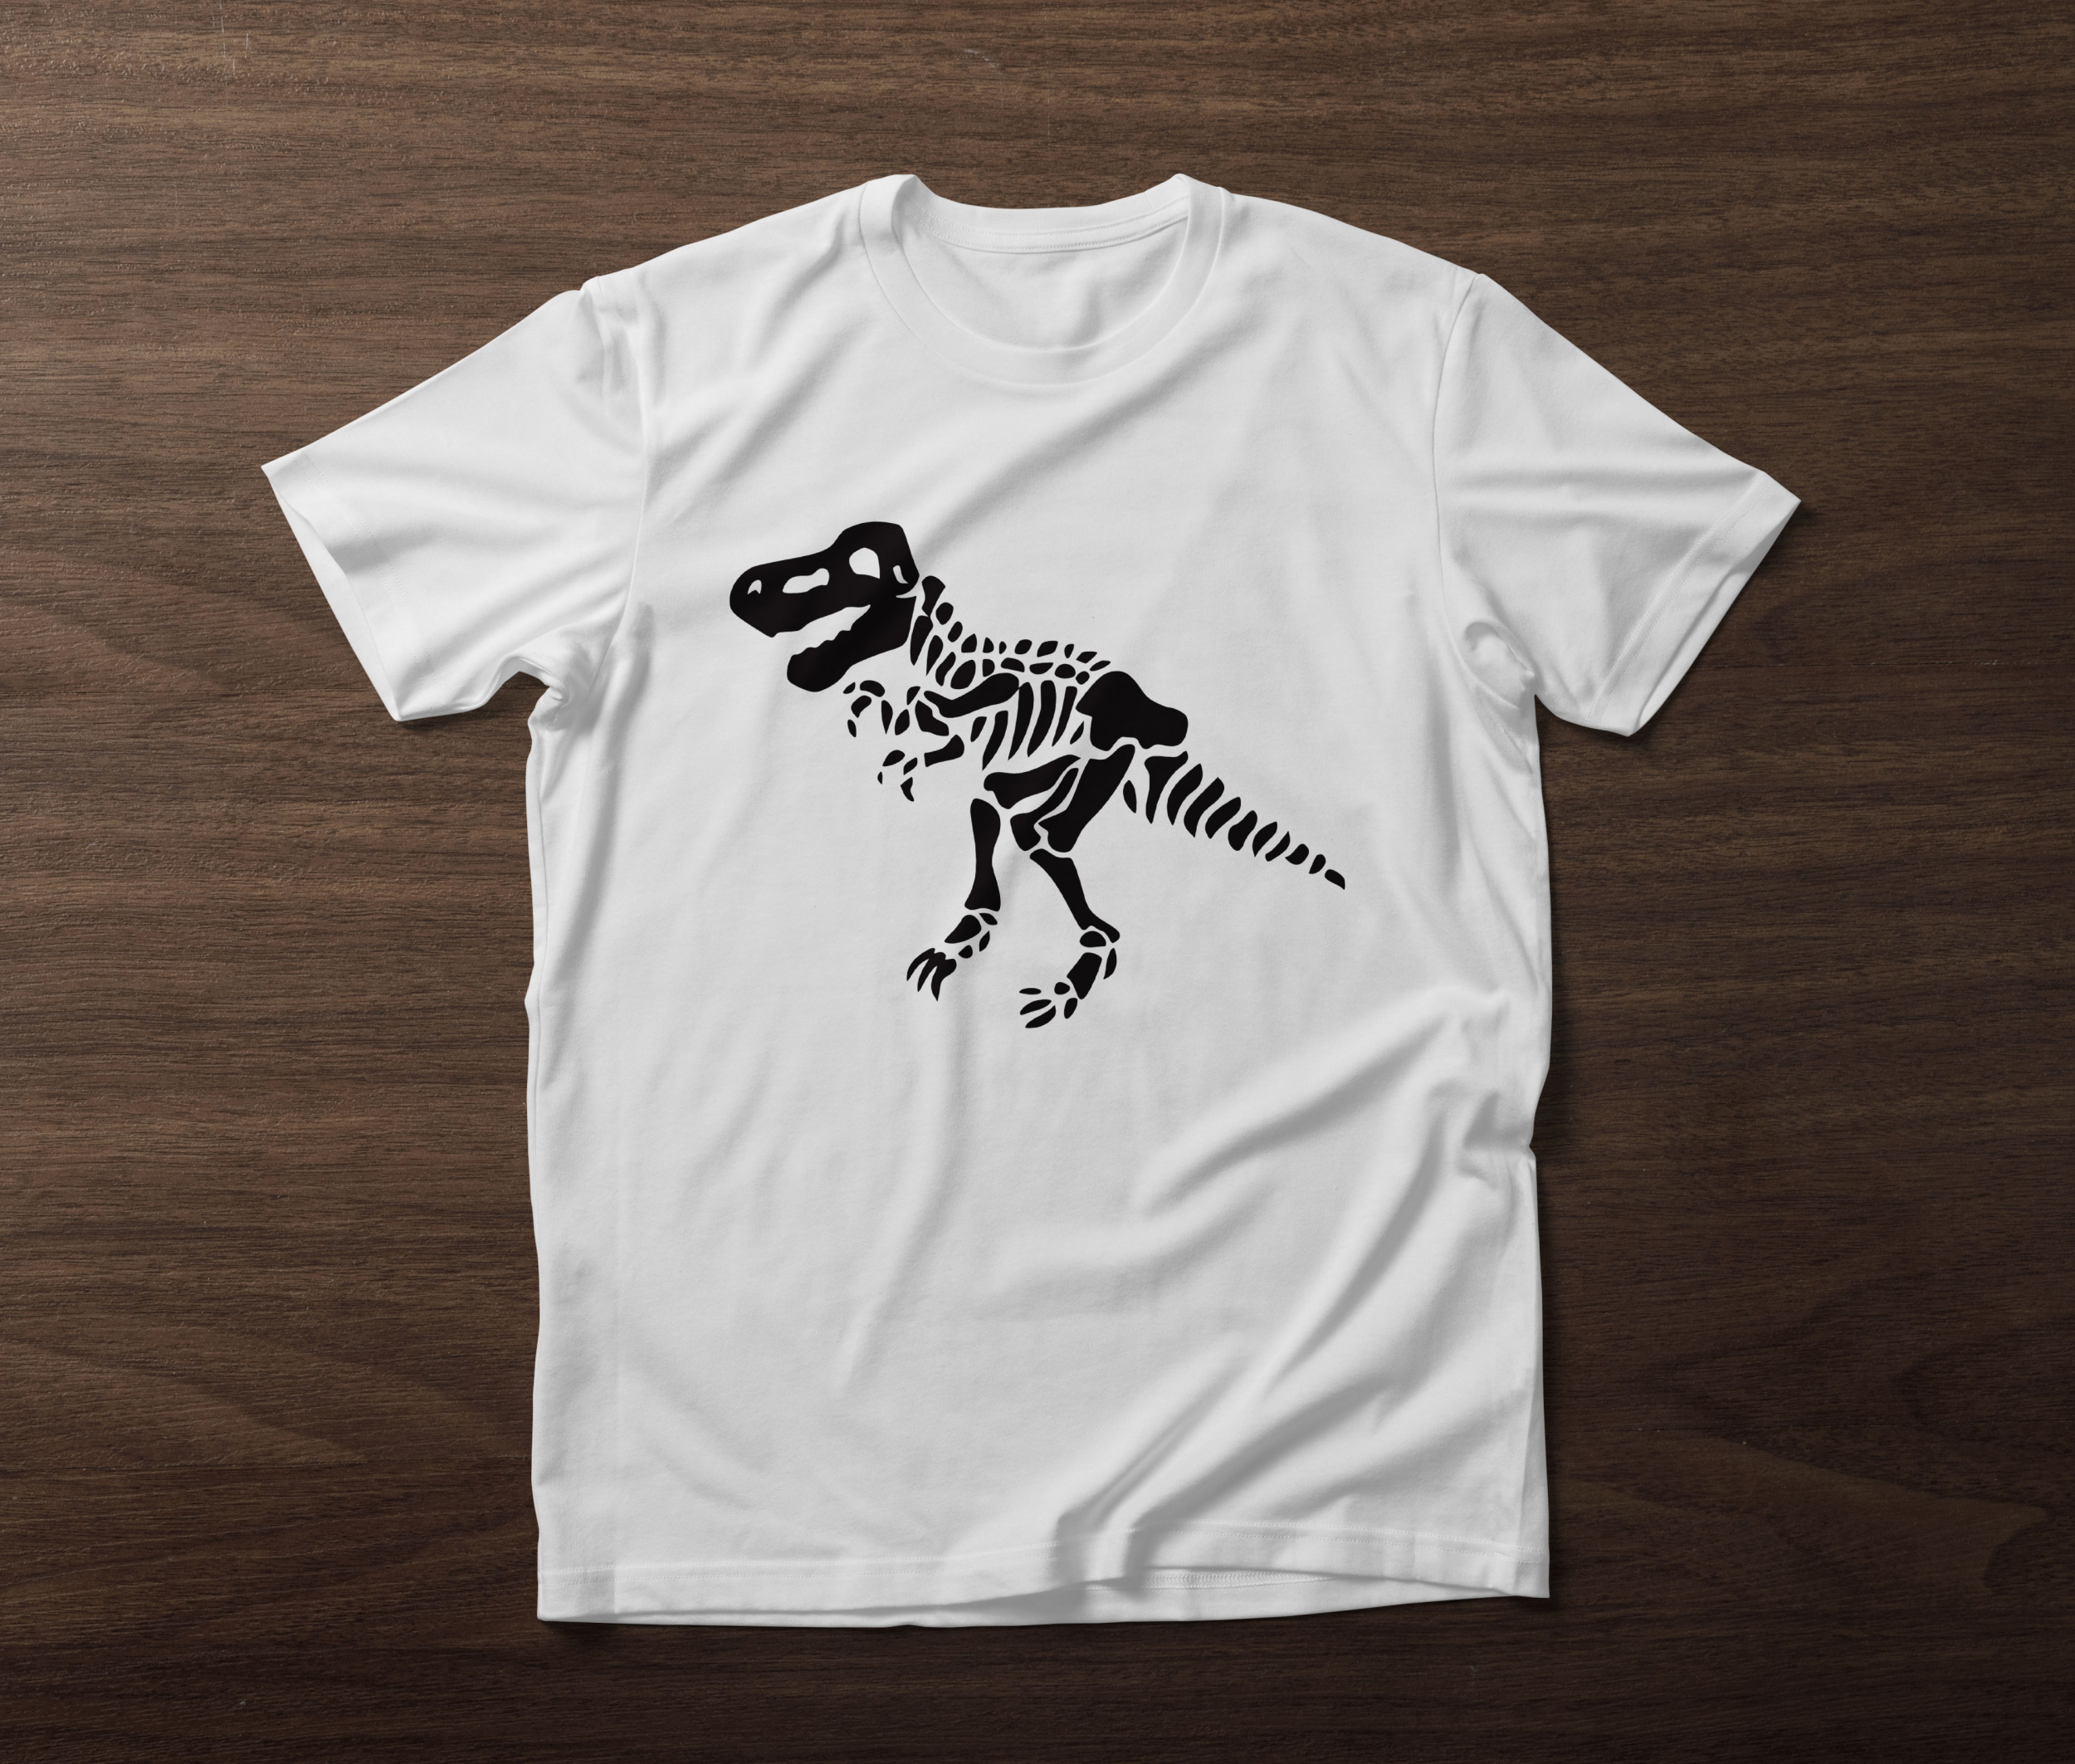 t rex skeleton t shirt designs bundle 04 464